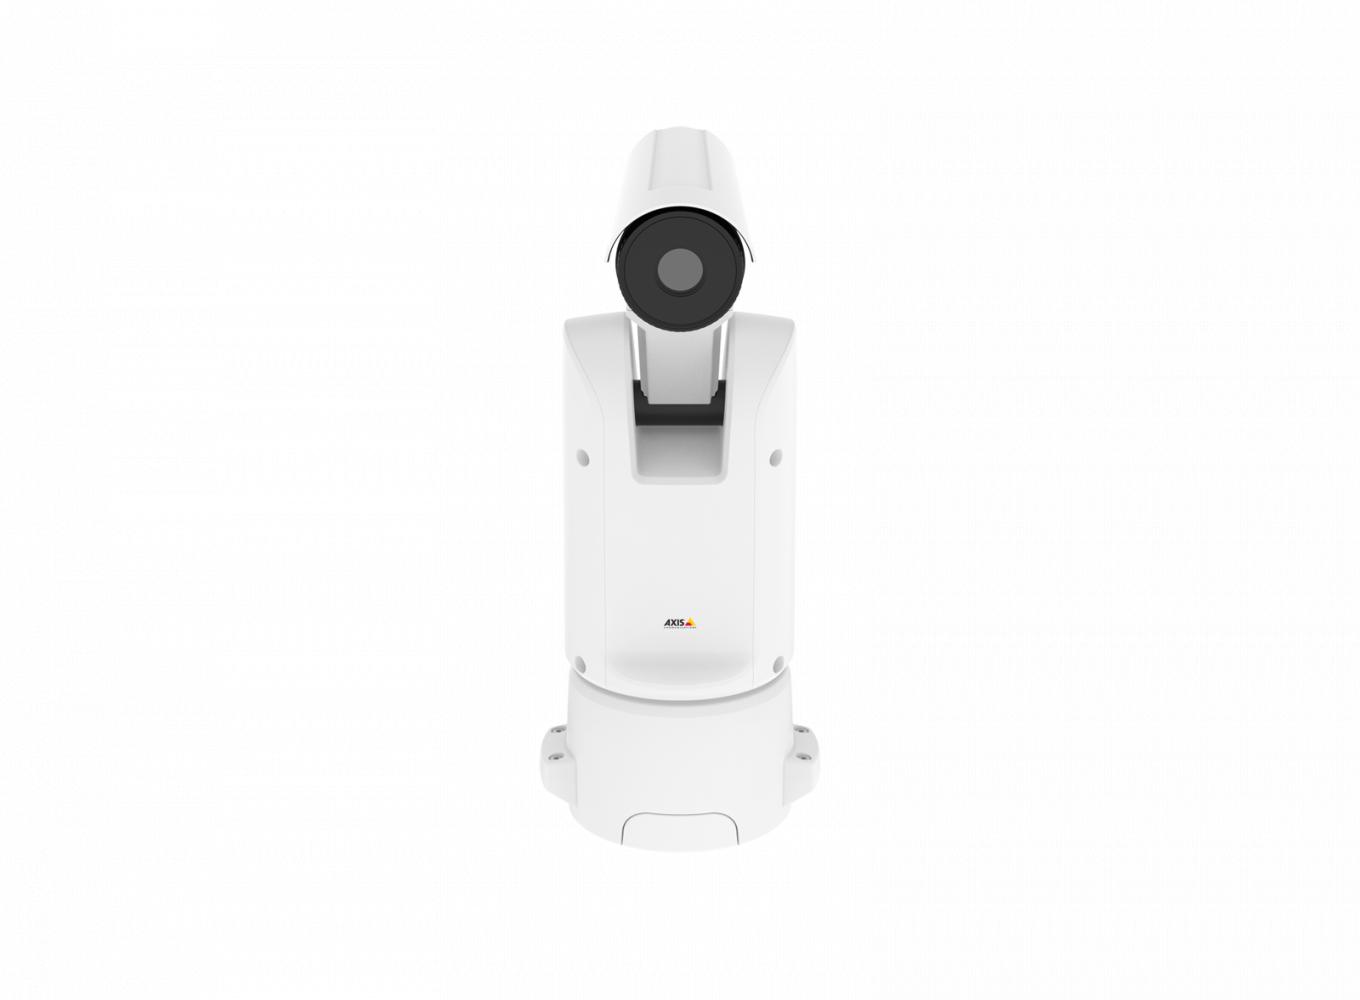 Тепловизионная сетевая PT-камера Axis Q 8641-E PT Thermal IP Camera, вид спереди